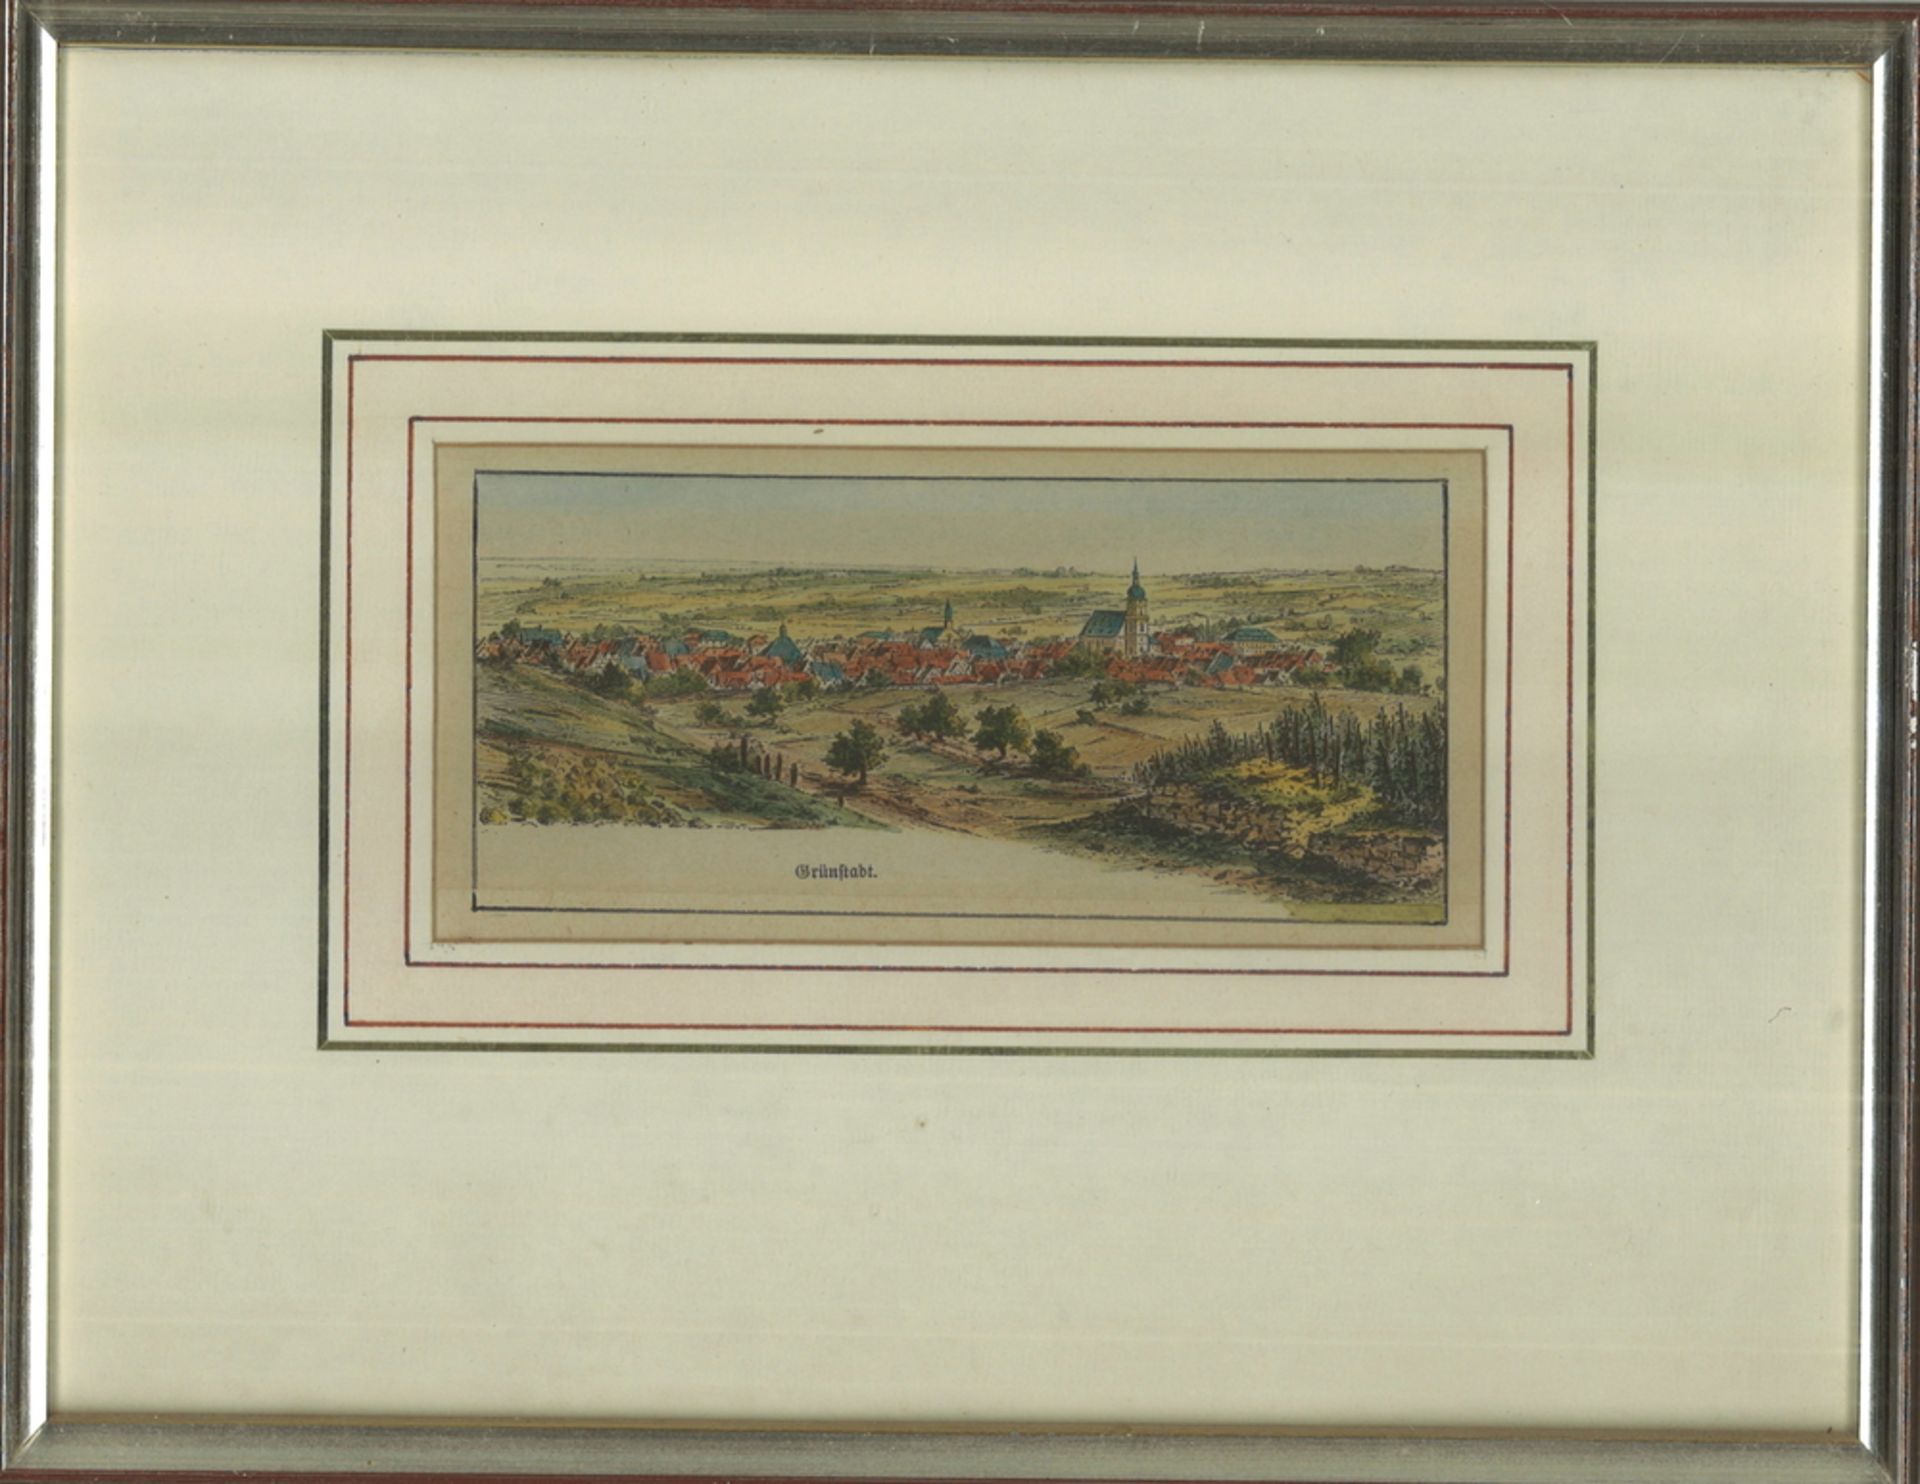 Holzschnitt um 1890 "Grünstadt" von Karl Dietrich, hinter Glas gerahmt. Gesamtmaße: Höhe ca. 19,5